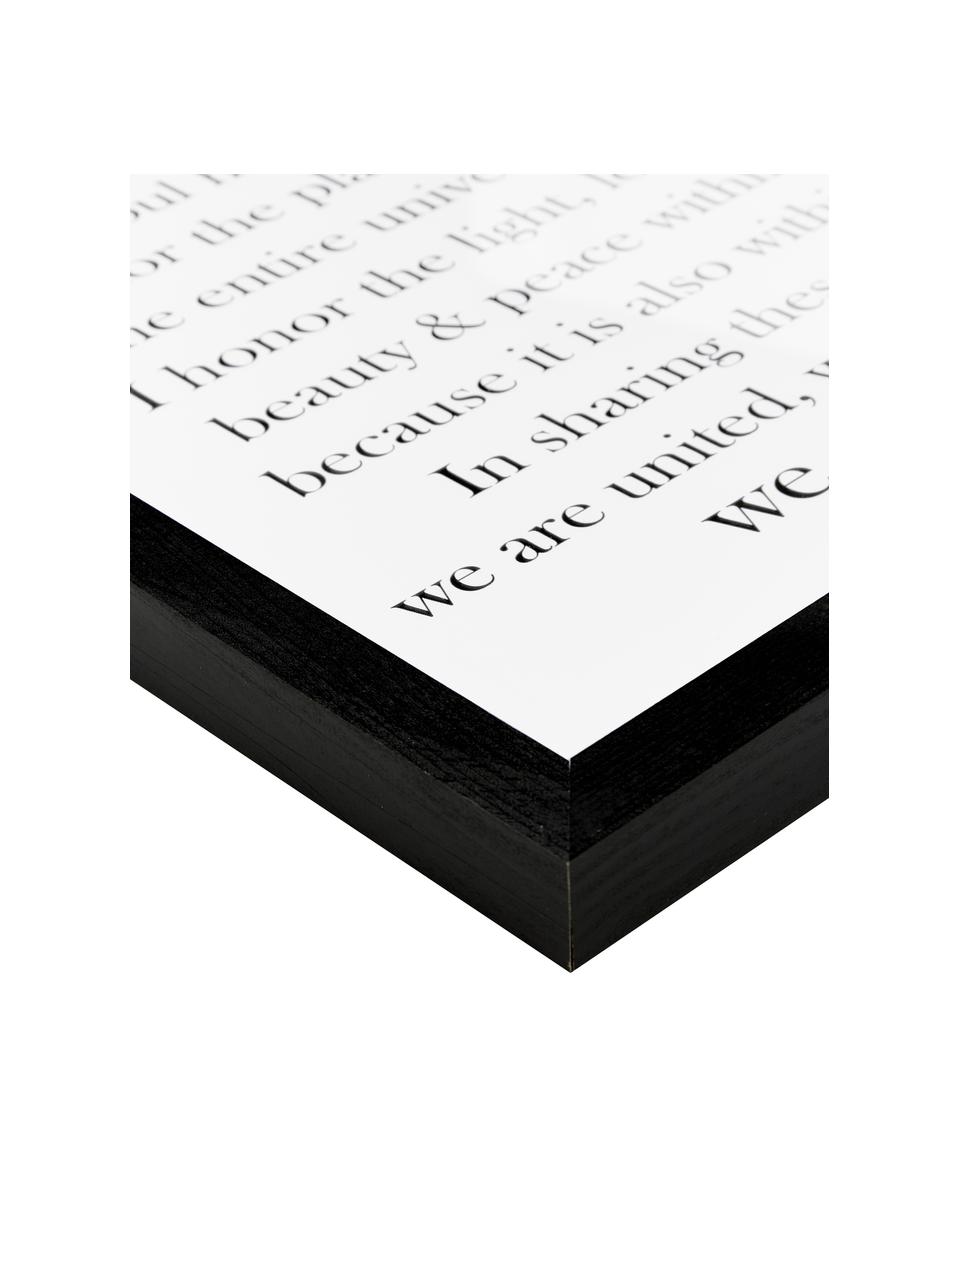 Gerahmter Digitaldruck Namasté, Bild: Digitaldruck auf Papier, , Rahmen: Holz, lackiert, Front: Plexiglas, Bild: Schwarz, Weiß Rahmen: Schwarz, B 33 x H 43 cm